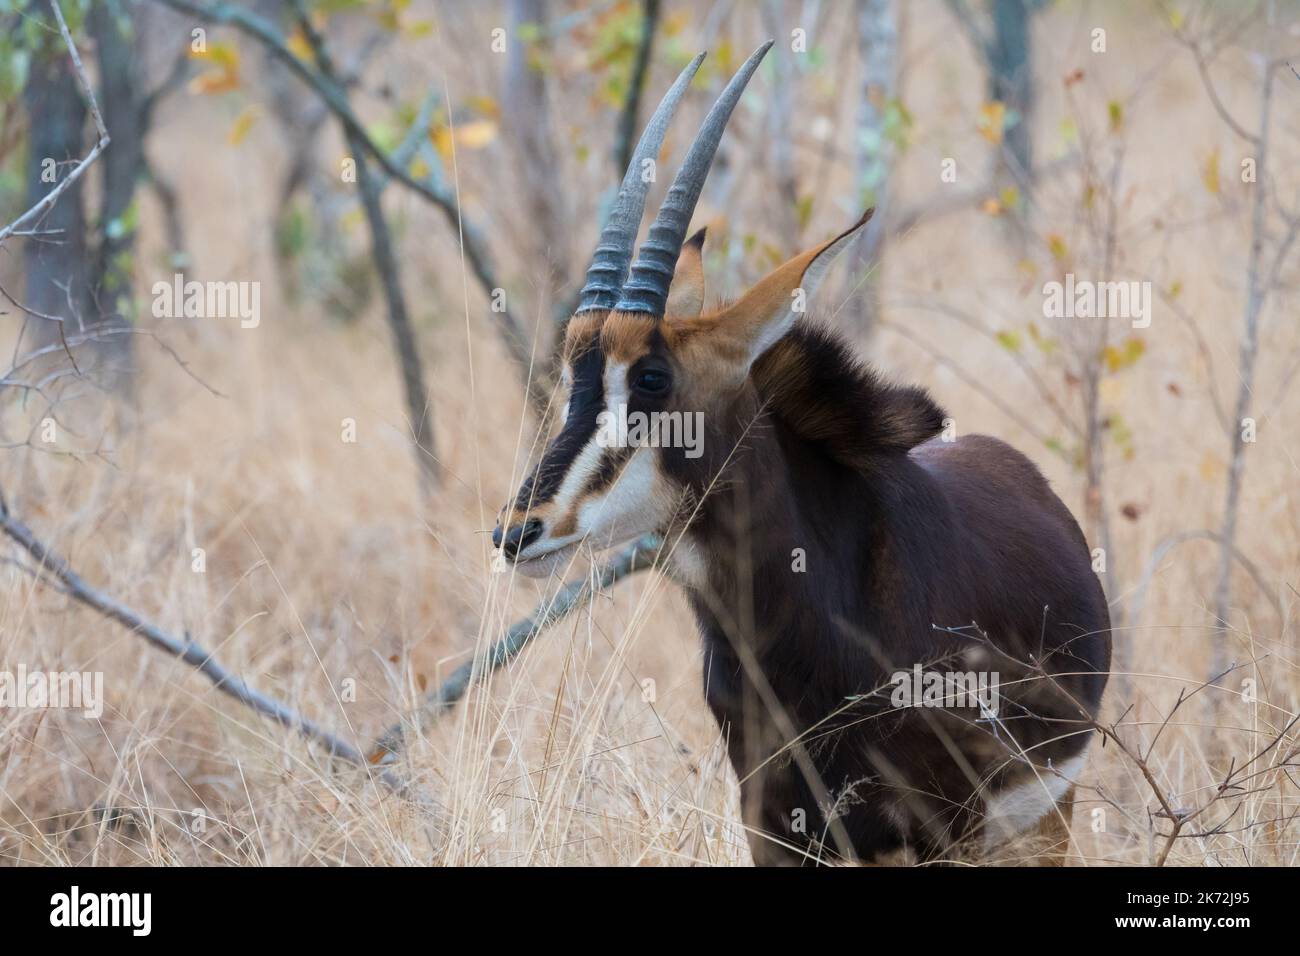 Antilope de sable (Hippotragus niger), gros plan du visage, de la tête, des cornes dans la nature sauvage du parc national Kruger, Afrique du Sud Banque D'Images